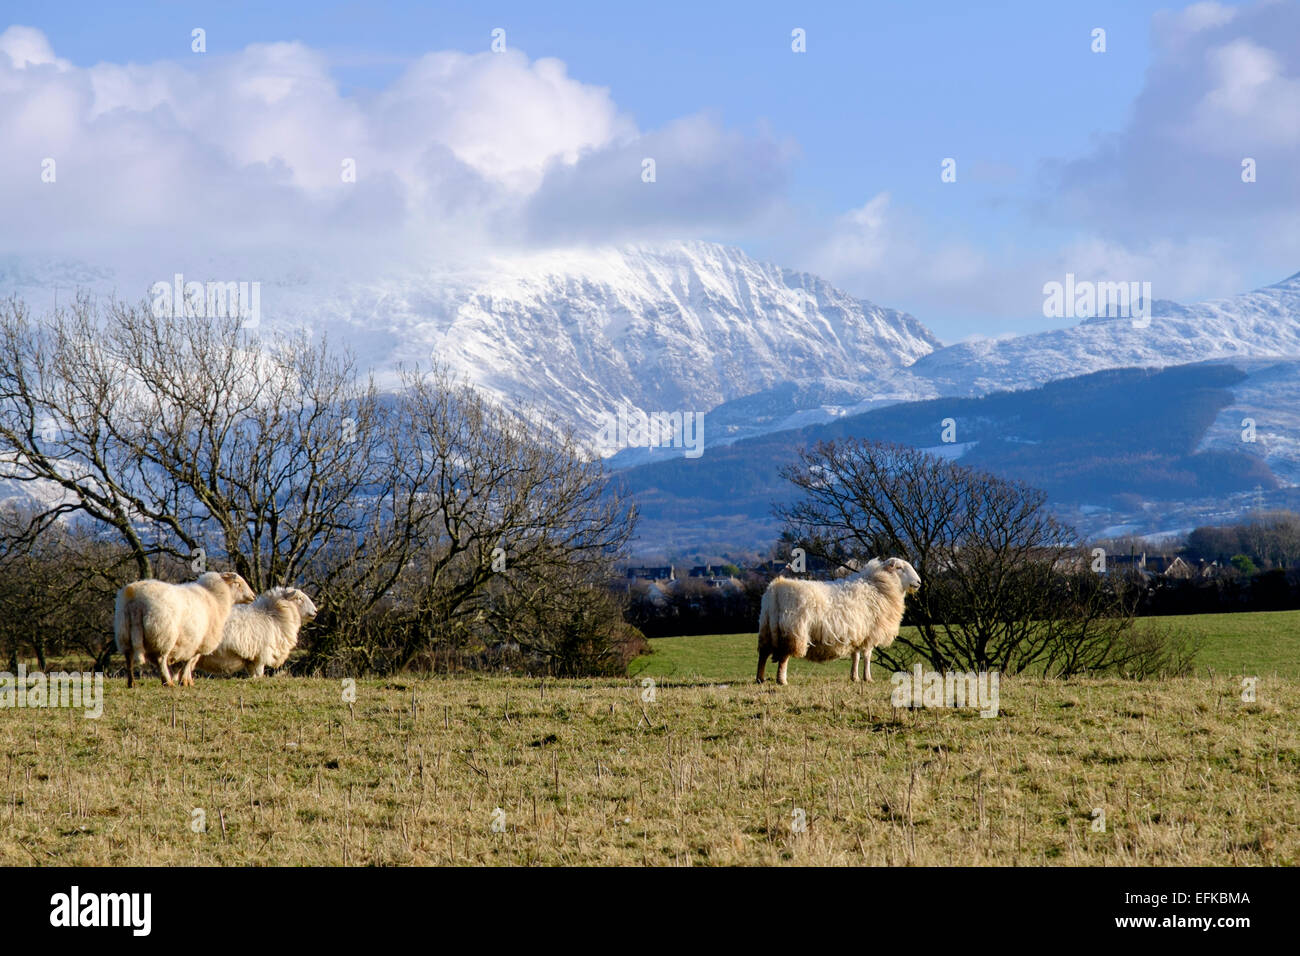 Moutons dans un champ avec vue sur la neige sur Carneddau montagnes de Snowdonia au-delà. Llanfair PG Ile d'Anglesey au Pays de Galles Royaume-uni Grande-Bretagne Banque D'Images